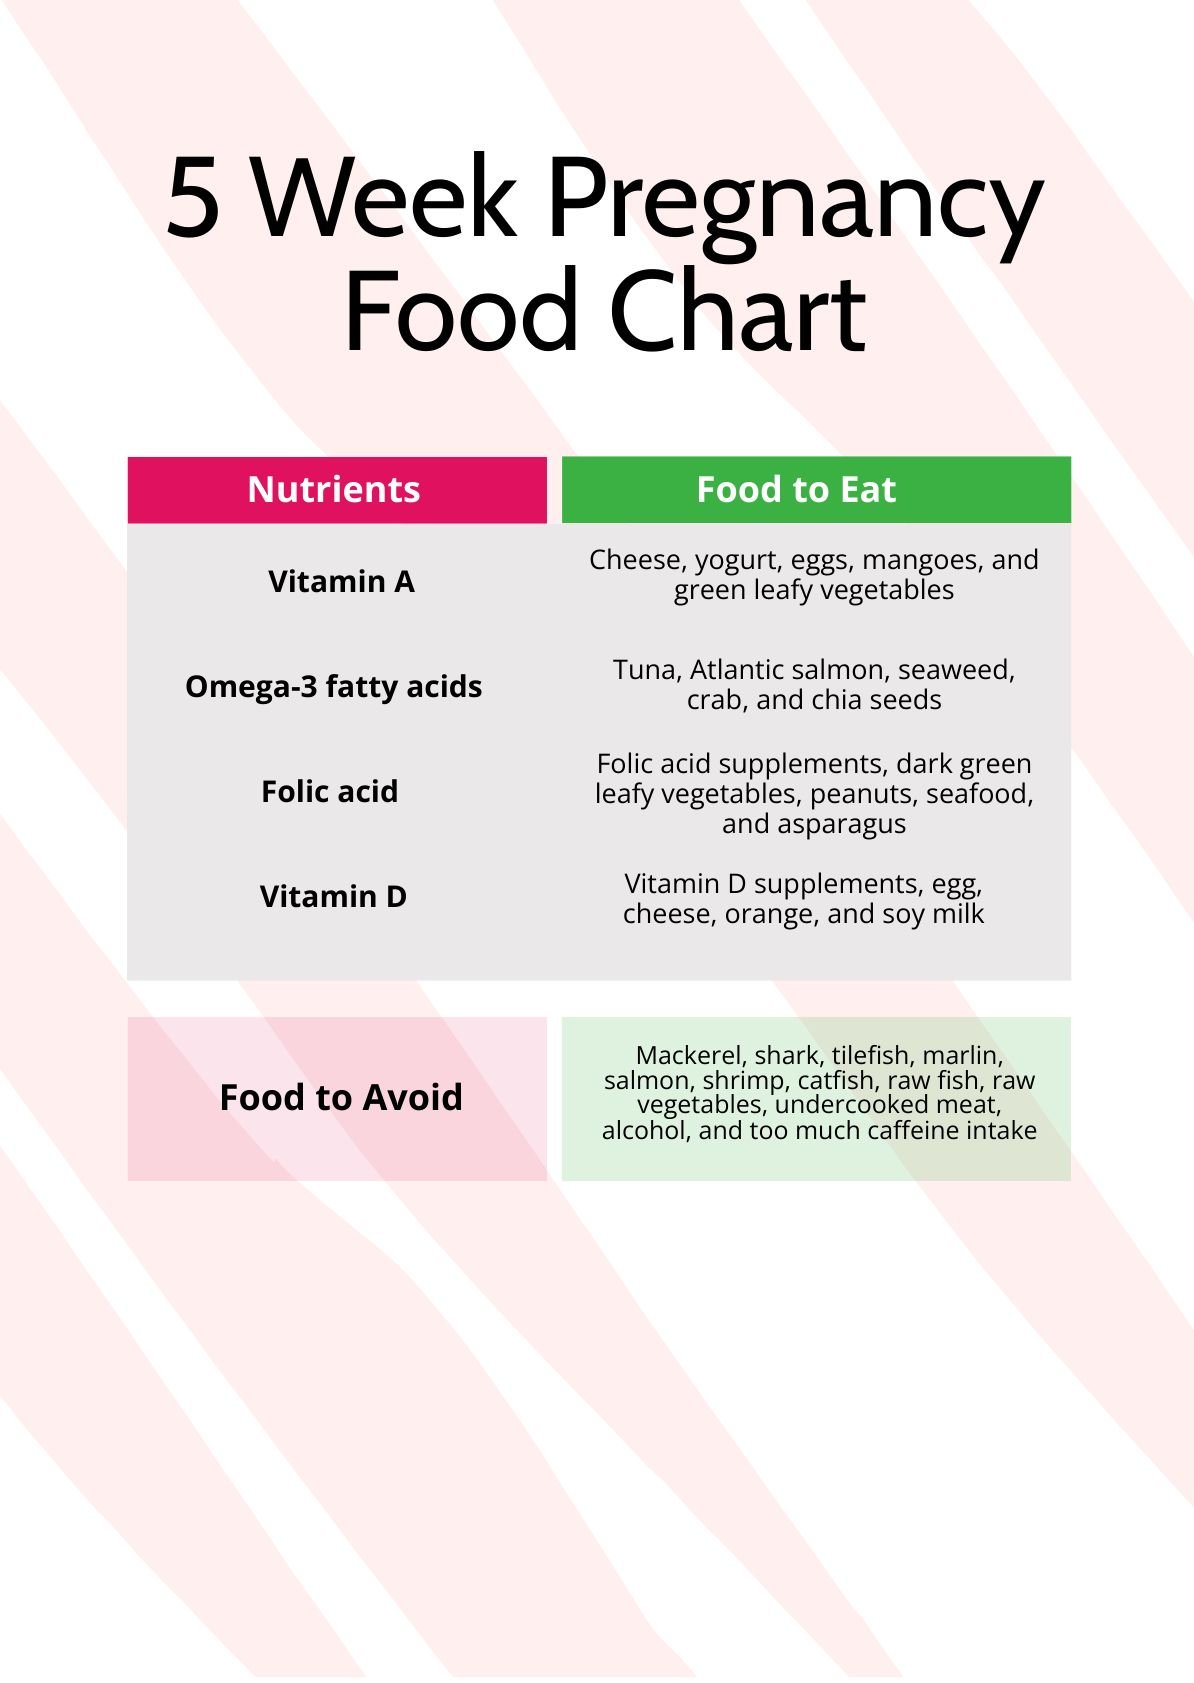 5 Week Pregnancy Food Chart in PDF